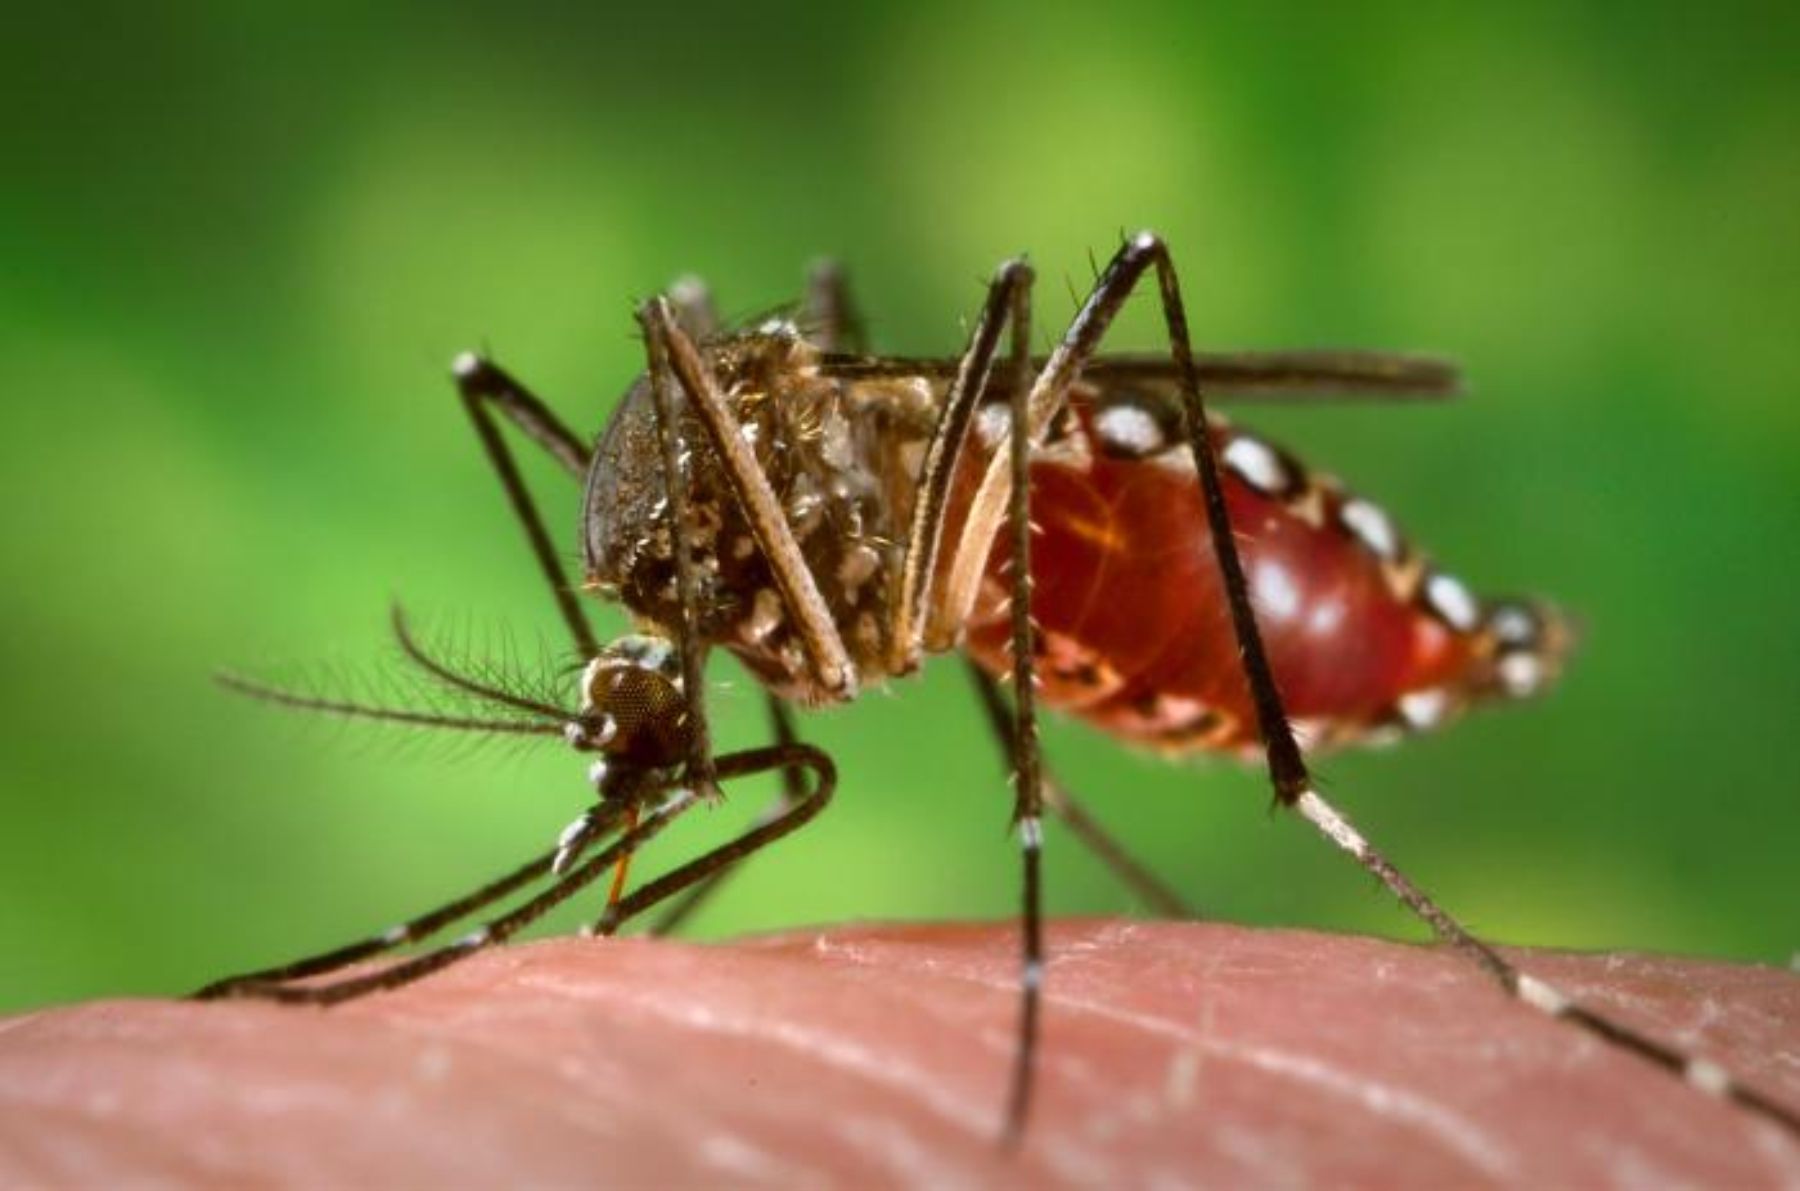 El aumento de temperatura permite a los insectos adaptarse y vivir en más entornos. Esto es lo que ocurre con el mosquito Aedes aegypti, principal transmisor del dengue, cuya propagación y expansión se incrementa con el calor, informó el Instituto Nacional de Salud (INS) del Ministerio de Salud (Minsa). INTERNET/Medios